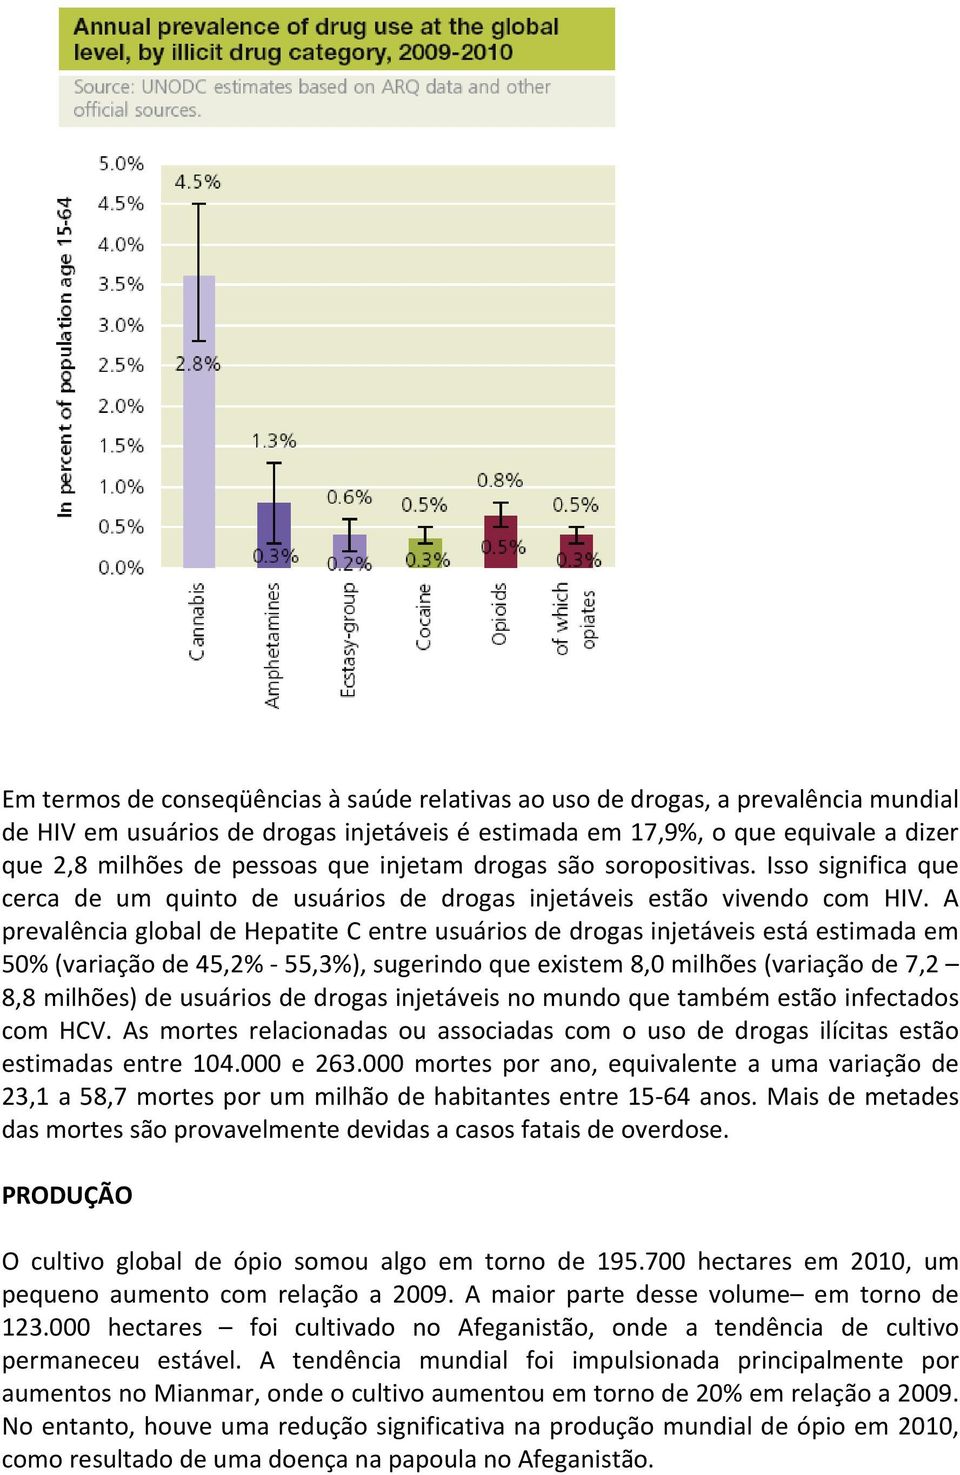 A prevalência global de Hepatite C entre usuários de drogas injetáveis está estimada em 50% (variação de 45,2% - 55,3%), sugerindo que existem 8,0 milhões (variação de 7,2 8,8 milhões) de usuários de